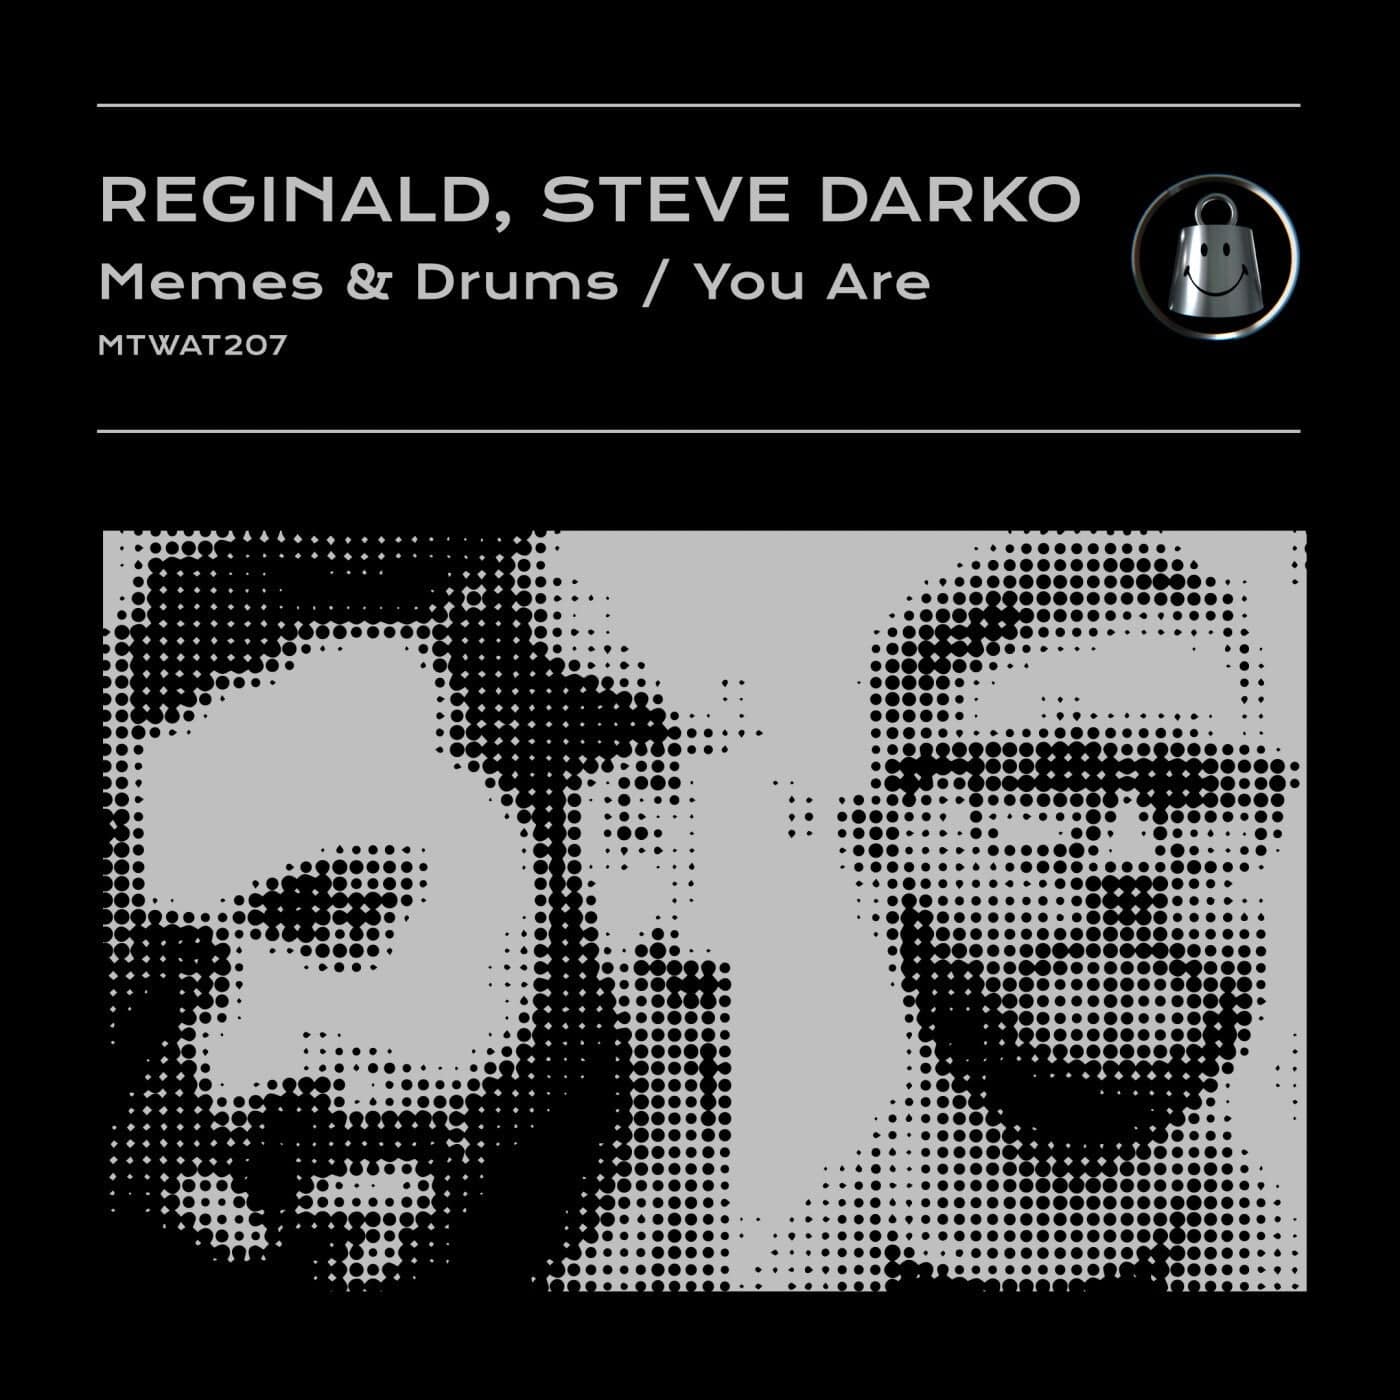 image cover: Steve Darko, Reginald - Memes & Drums / MTWAT207